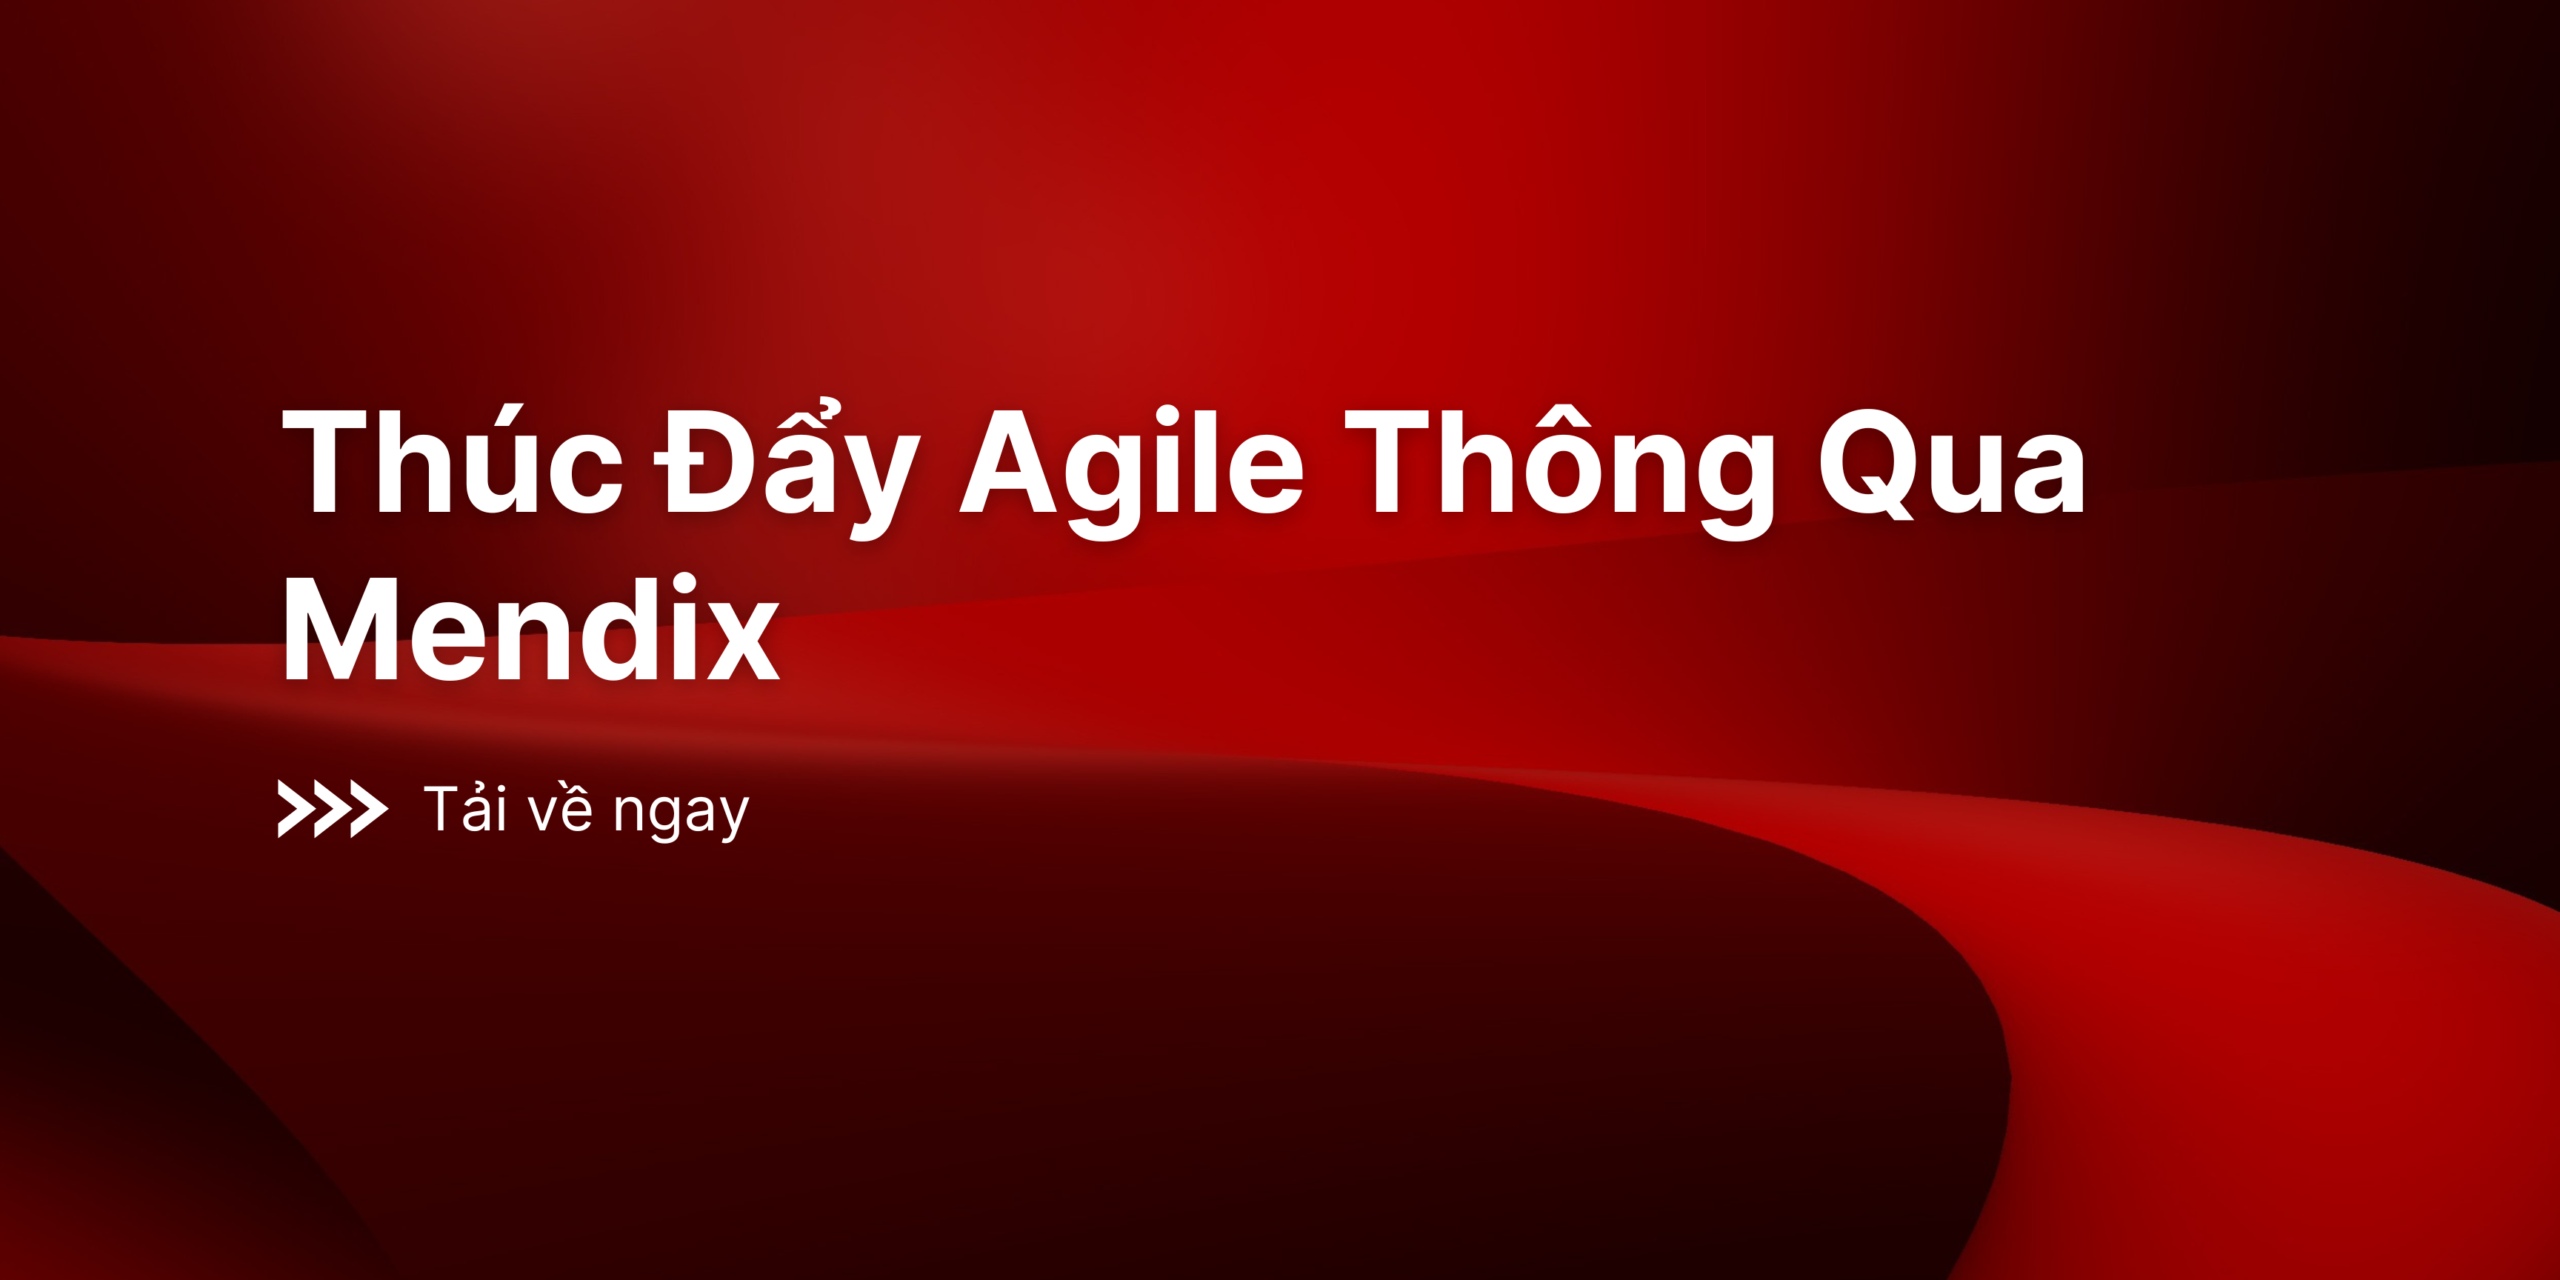 Thuc Day Agile Thong Qua Mendix